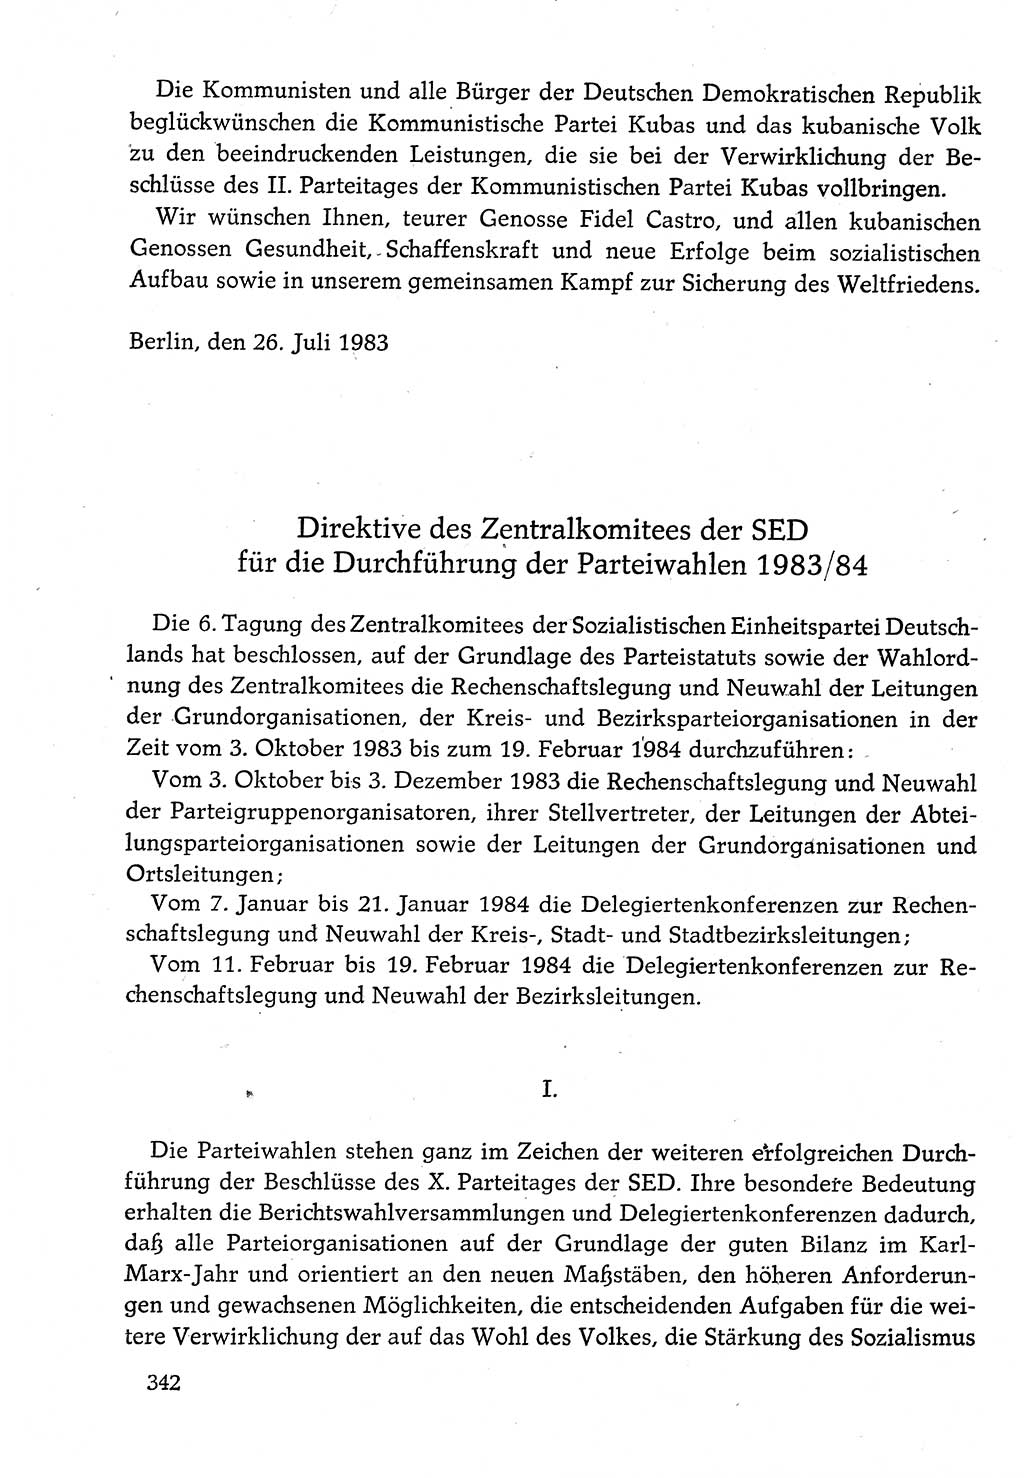 Dokumente der Sozialistischen Einheitspartei Deutschlands (SED) [Deutsche Demokratische Republik (DDR)] 1982-1983, Seite 342 (Dok. SED DDR 1982-1983, S. 342)